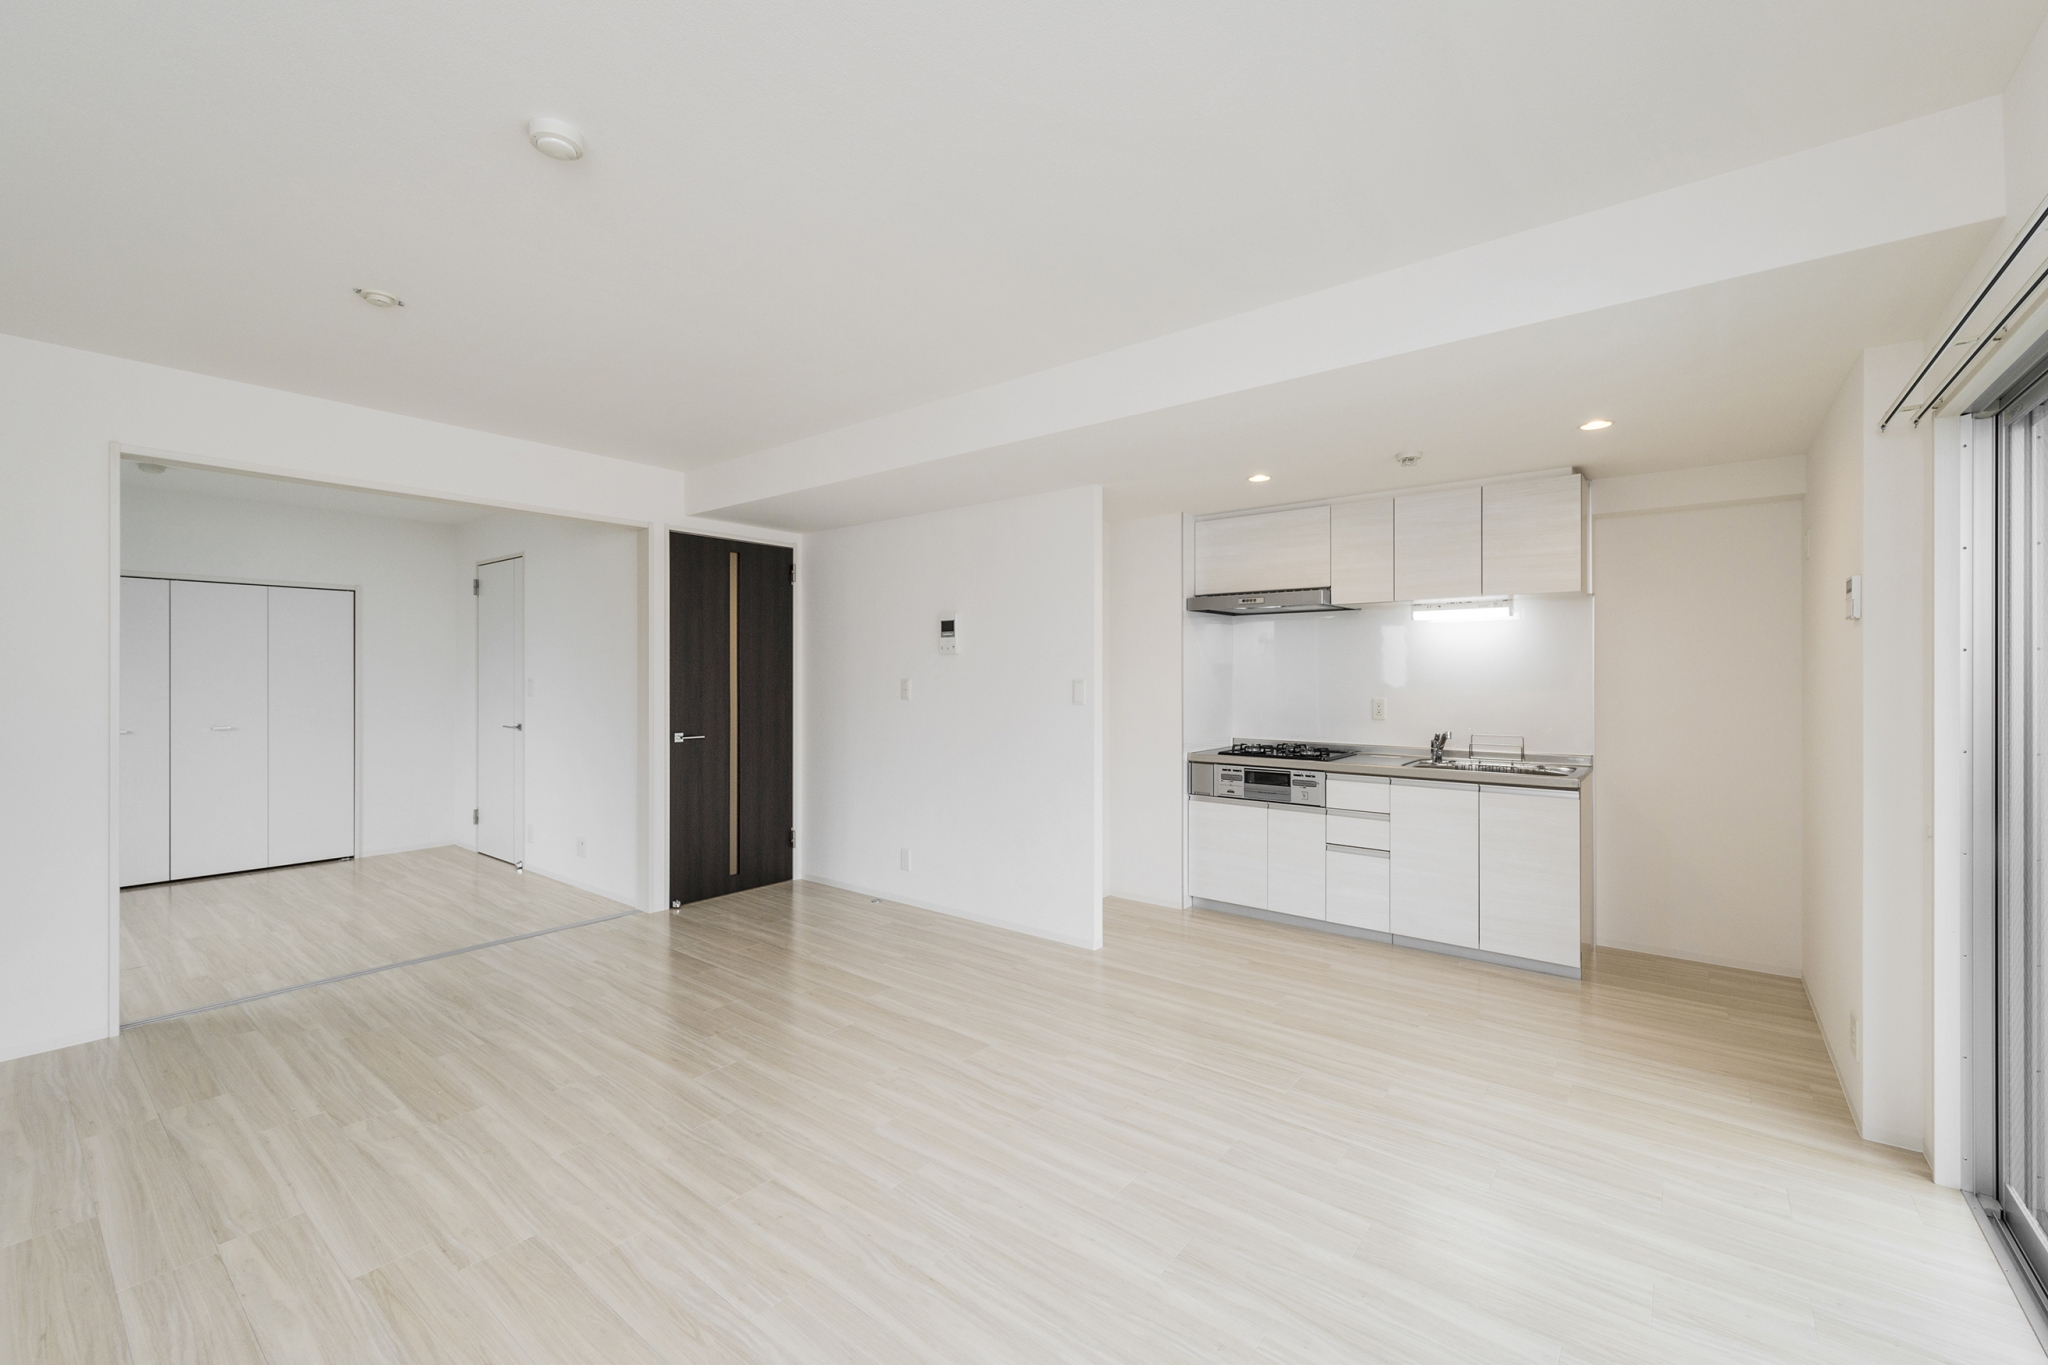 名古屋市中区の賃貸マンションのドアがアクセントカラーの白を基調にしたLDK･洋室